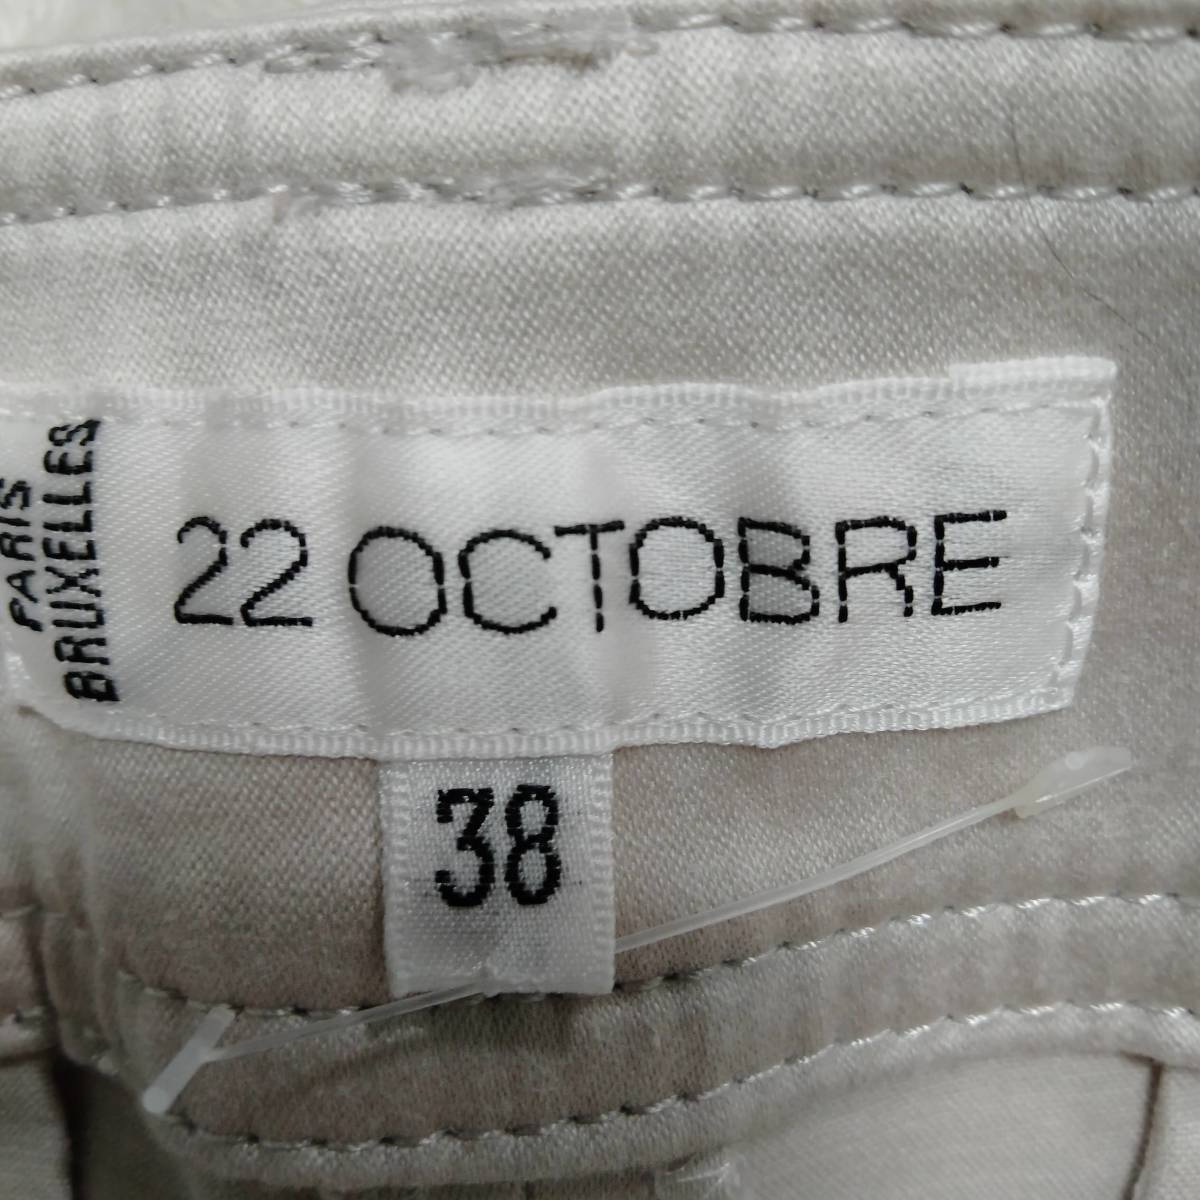 22 OCTOBRE Van du- Okt -bru конические брюки одноцветный карман длинный длина низ женский серый размер 38 YFF32